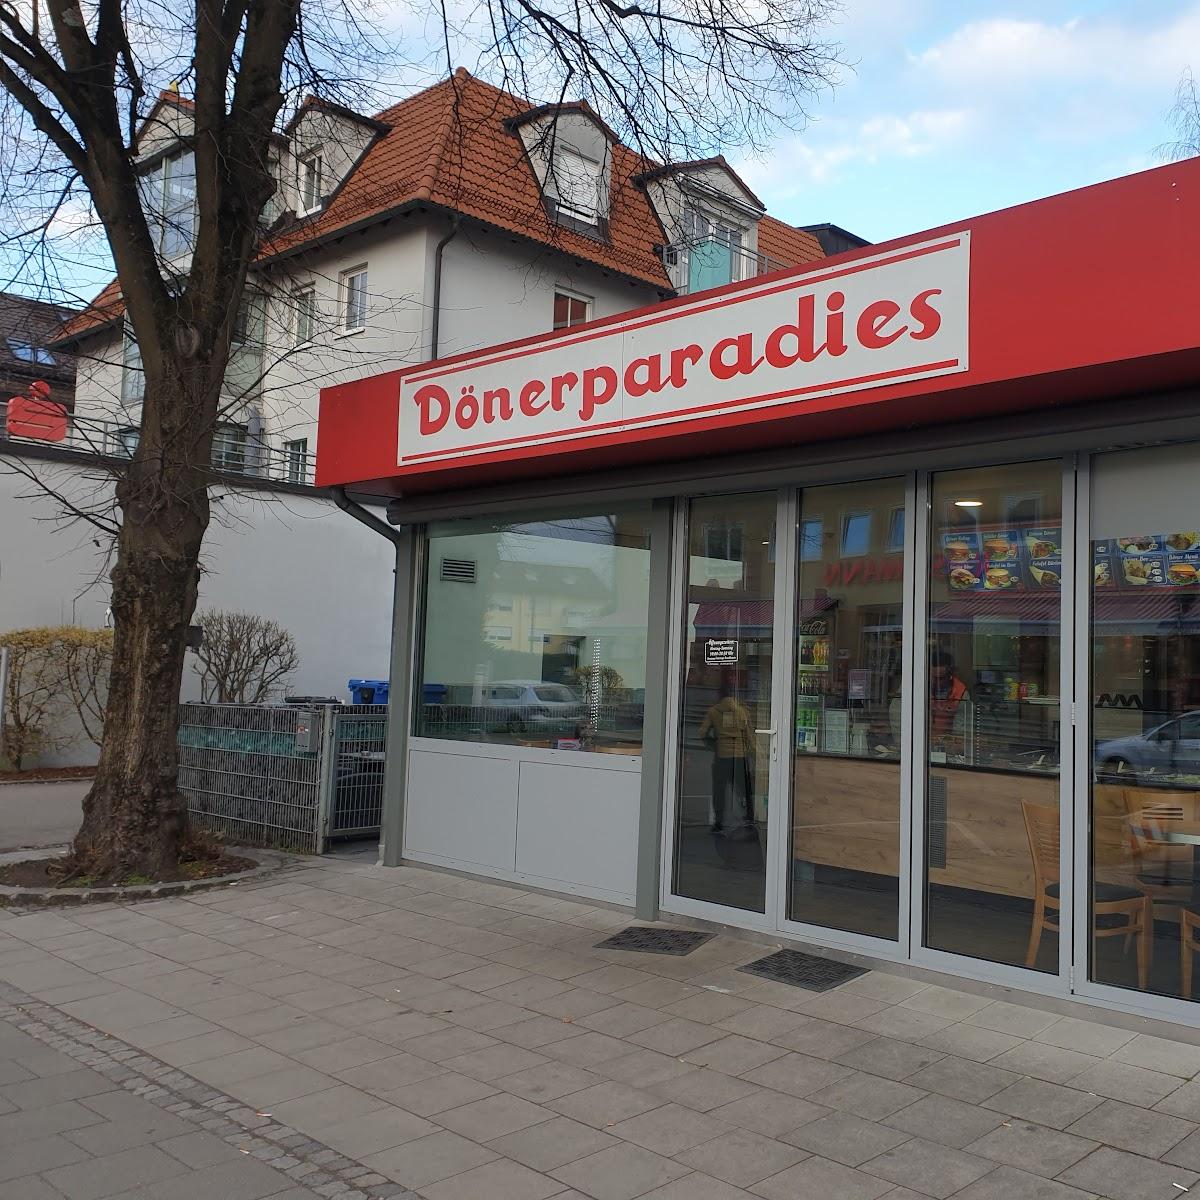 Restaurant "Döner Paradies" in Gröbenzell